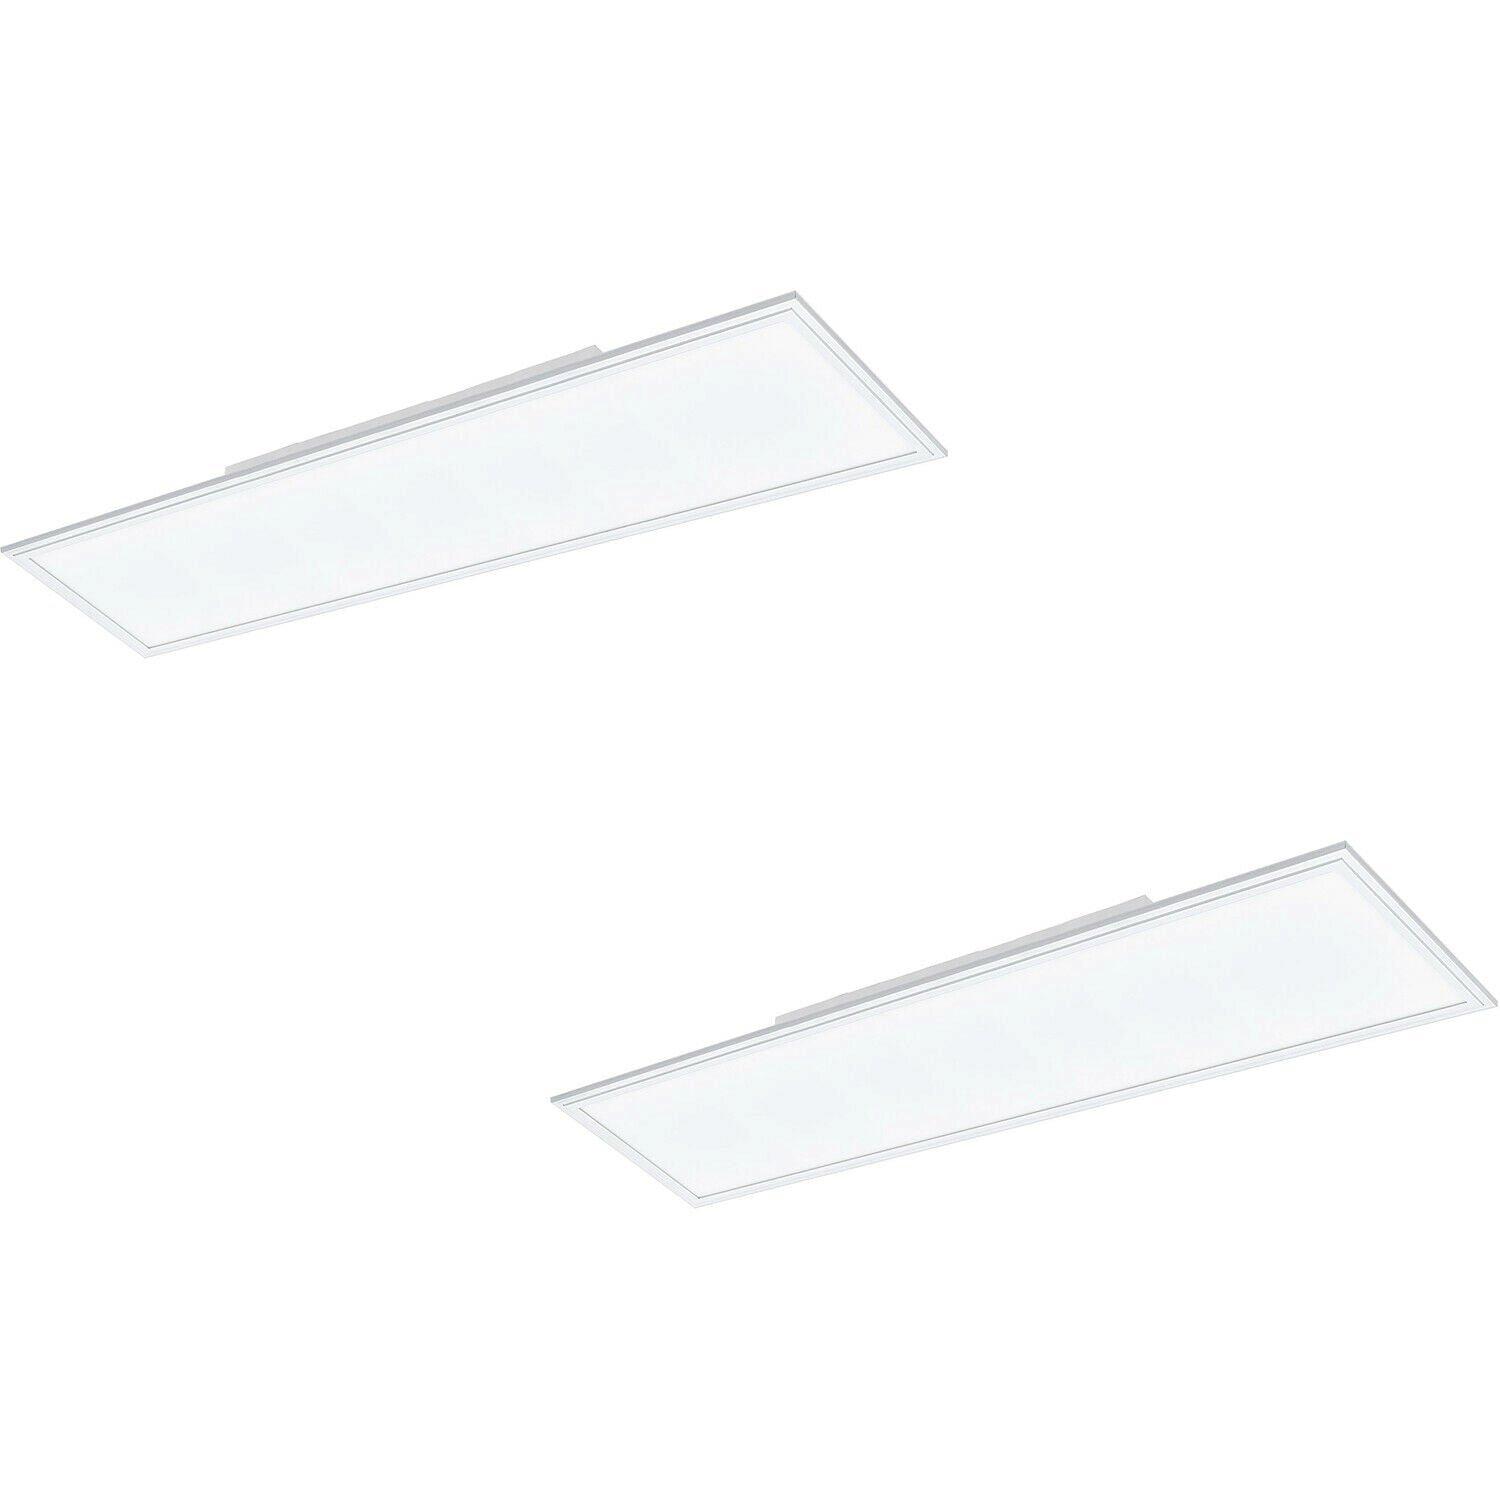 2 PACK Wall / Ceiling Light White Aluminium 1200mm x 300mm Panel 40W LED 4000K